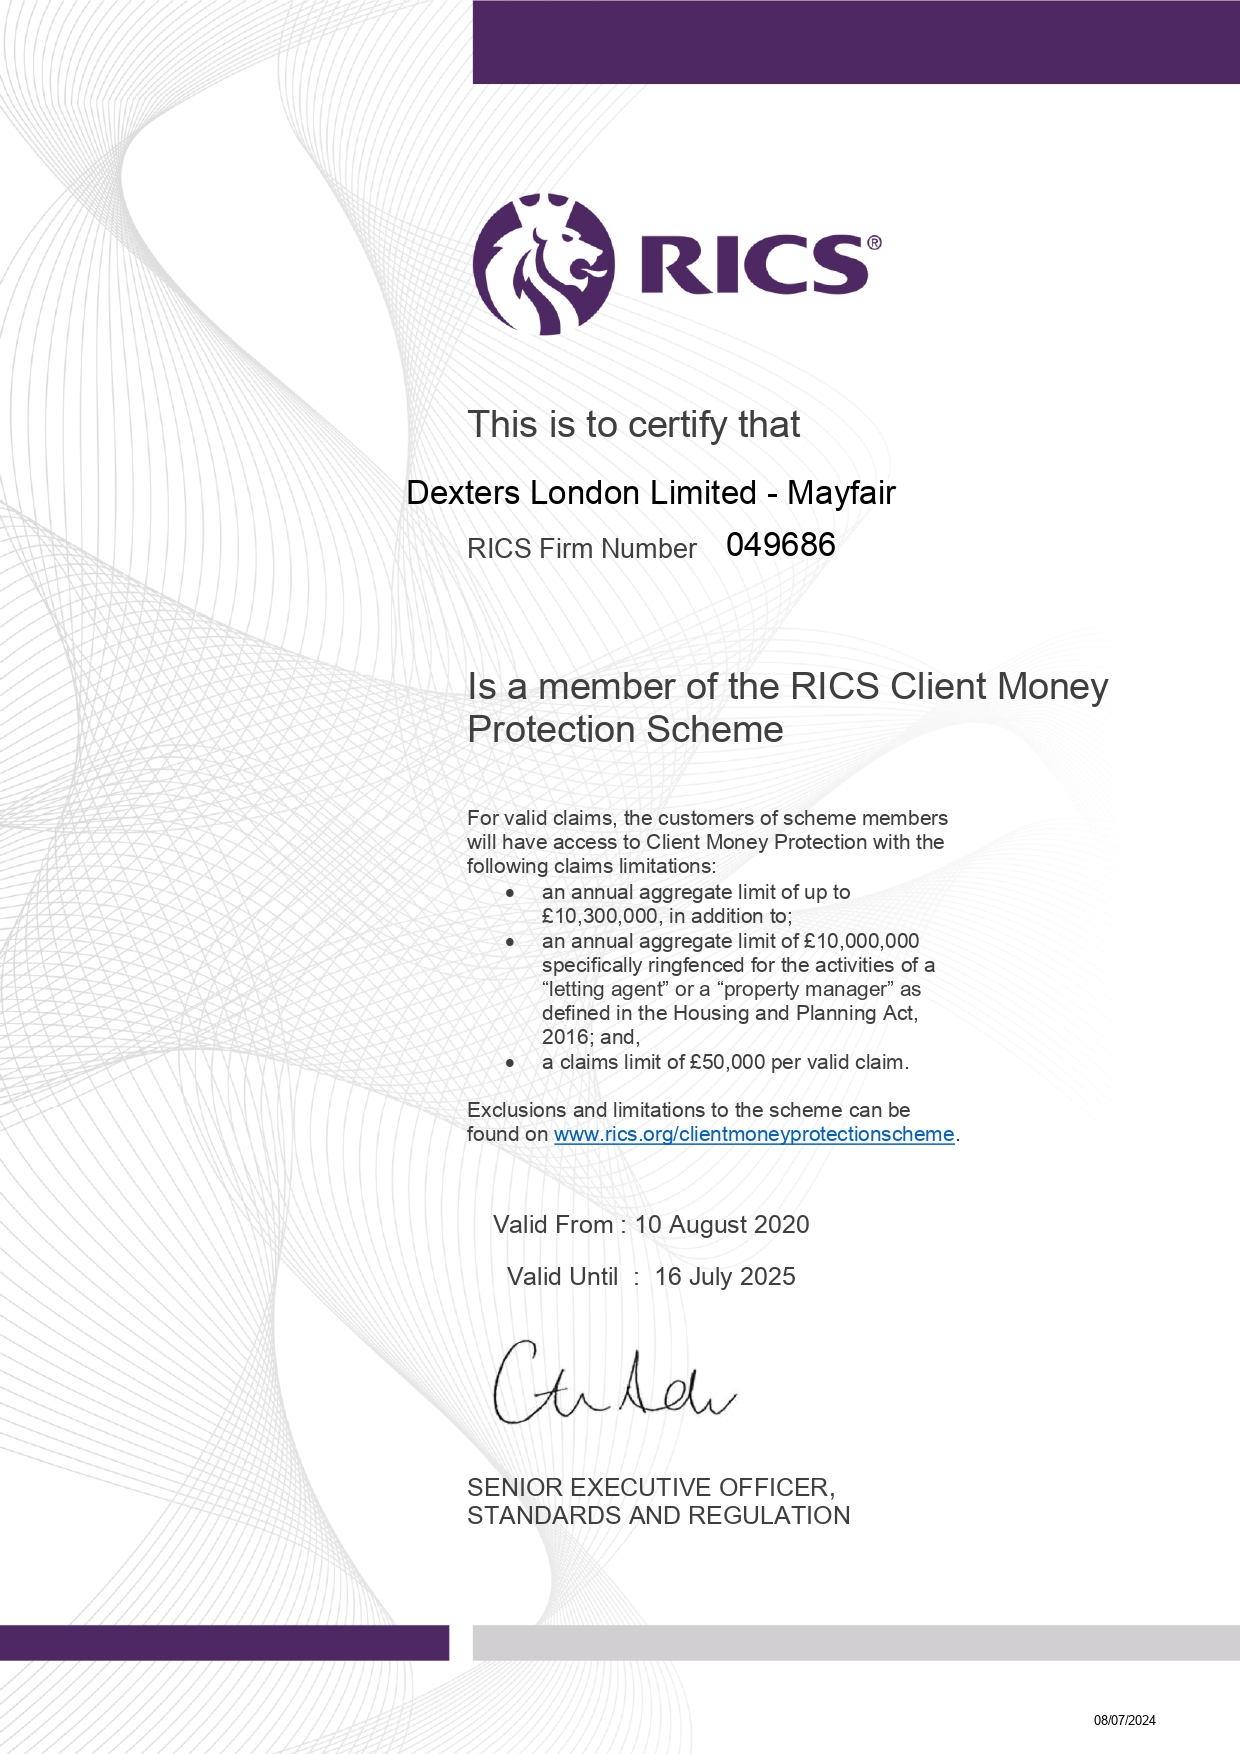 Dexters London Limited RICS Client Money Protection Certificate